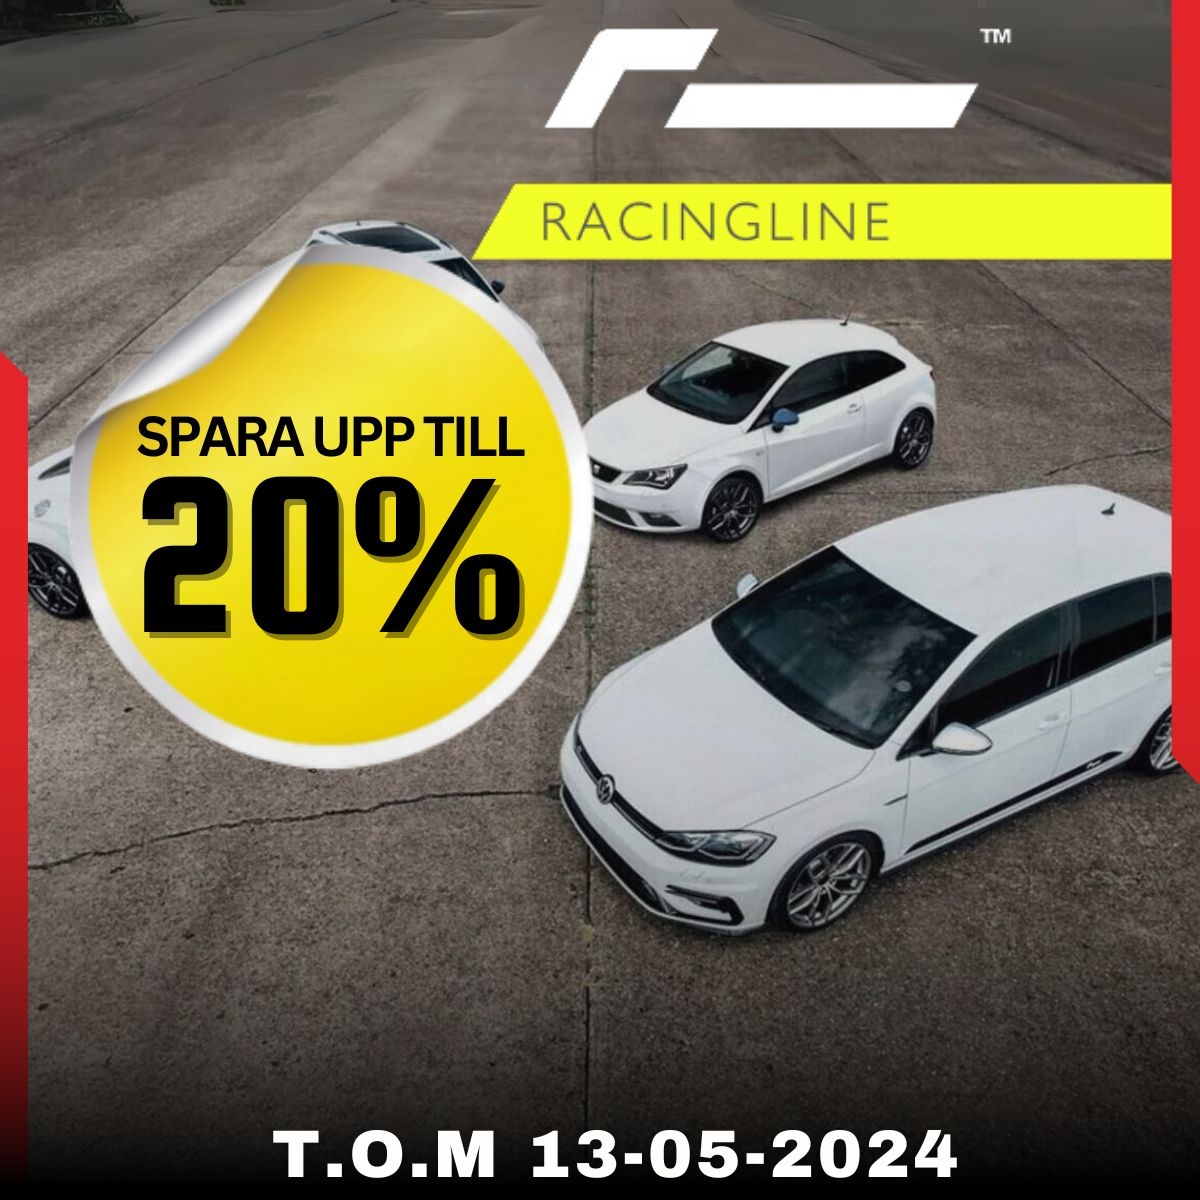 Spara upp till 20% på Racingline och ge din bil en uppgradering.